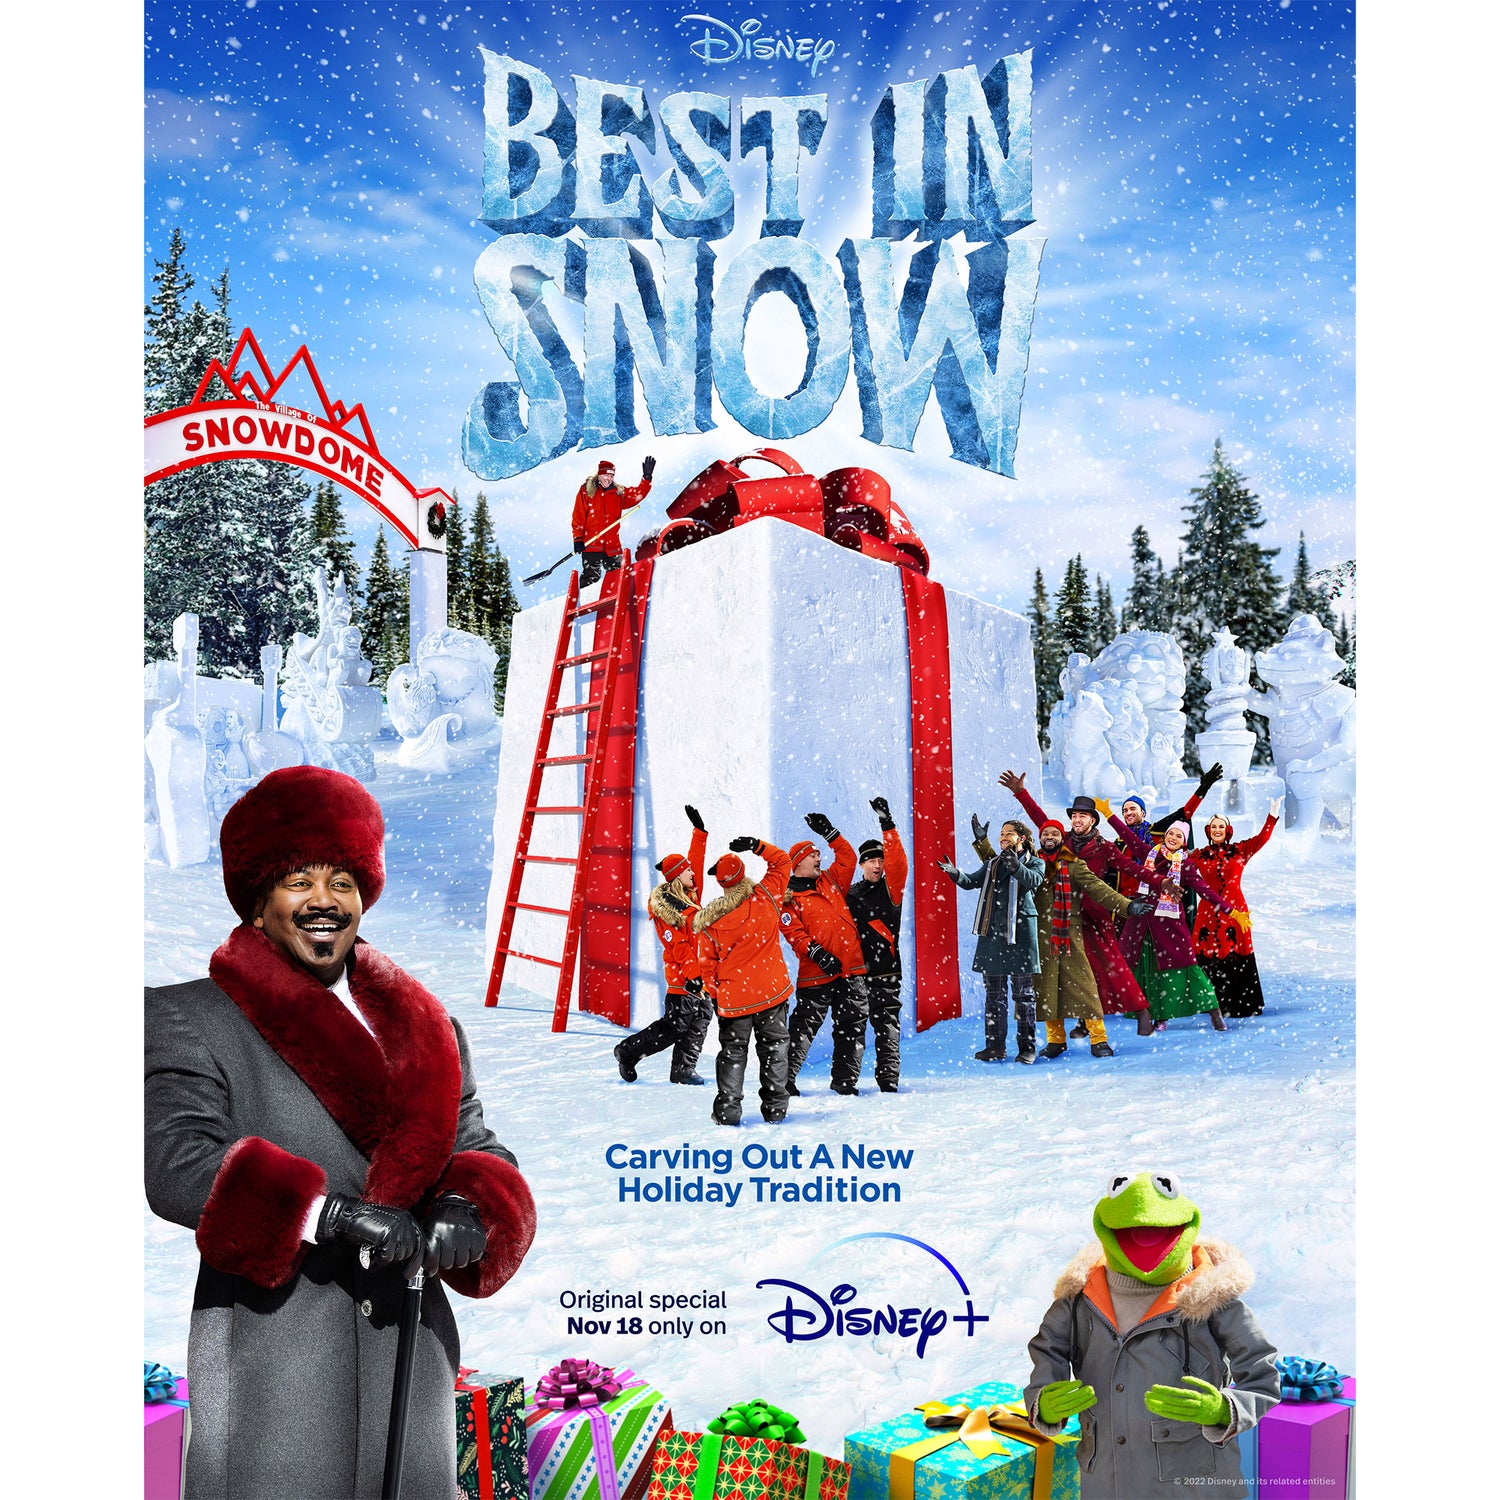 Wintergreen Northern Wear Featured In "Best In Snow"